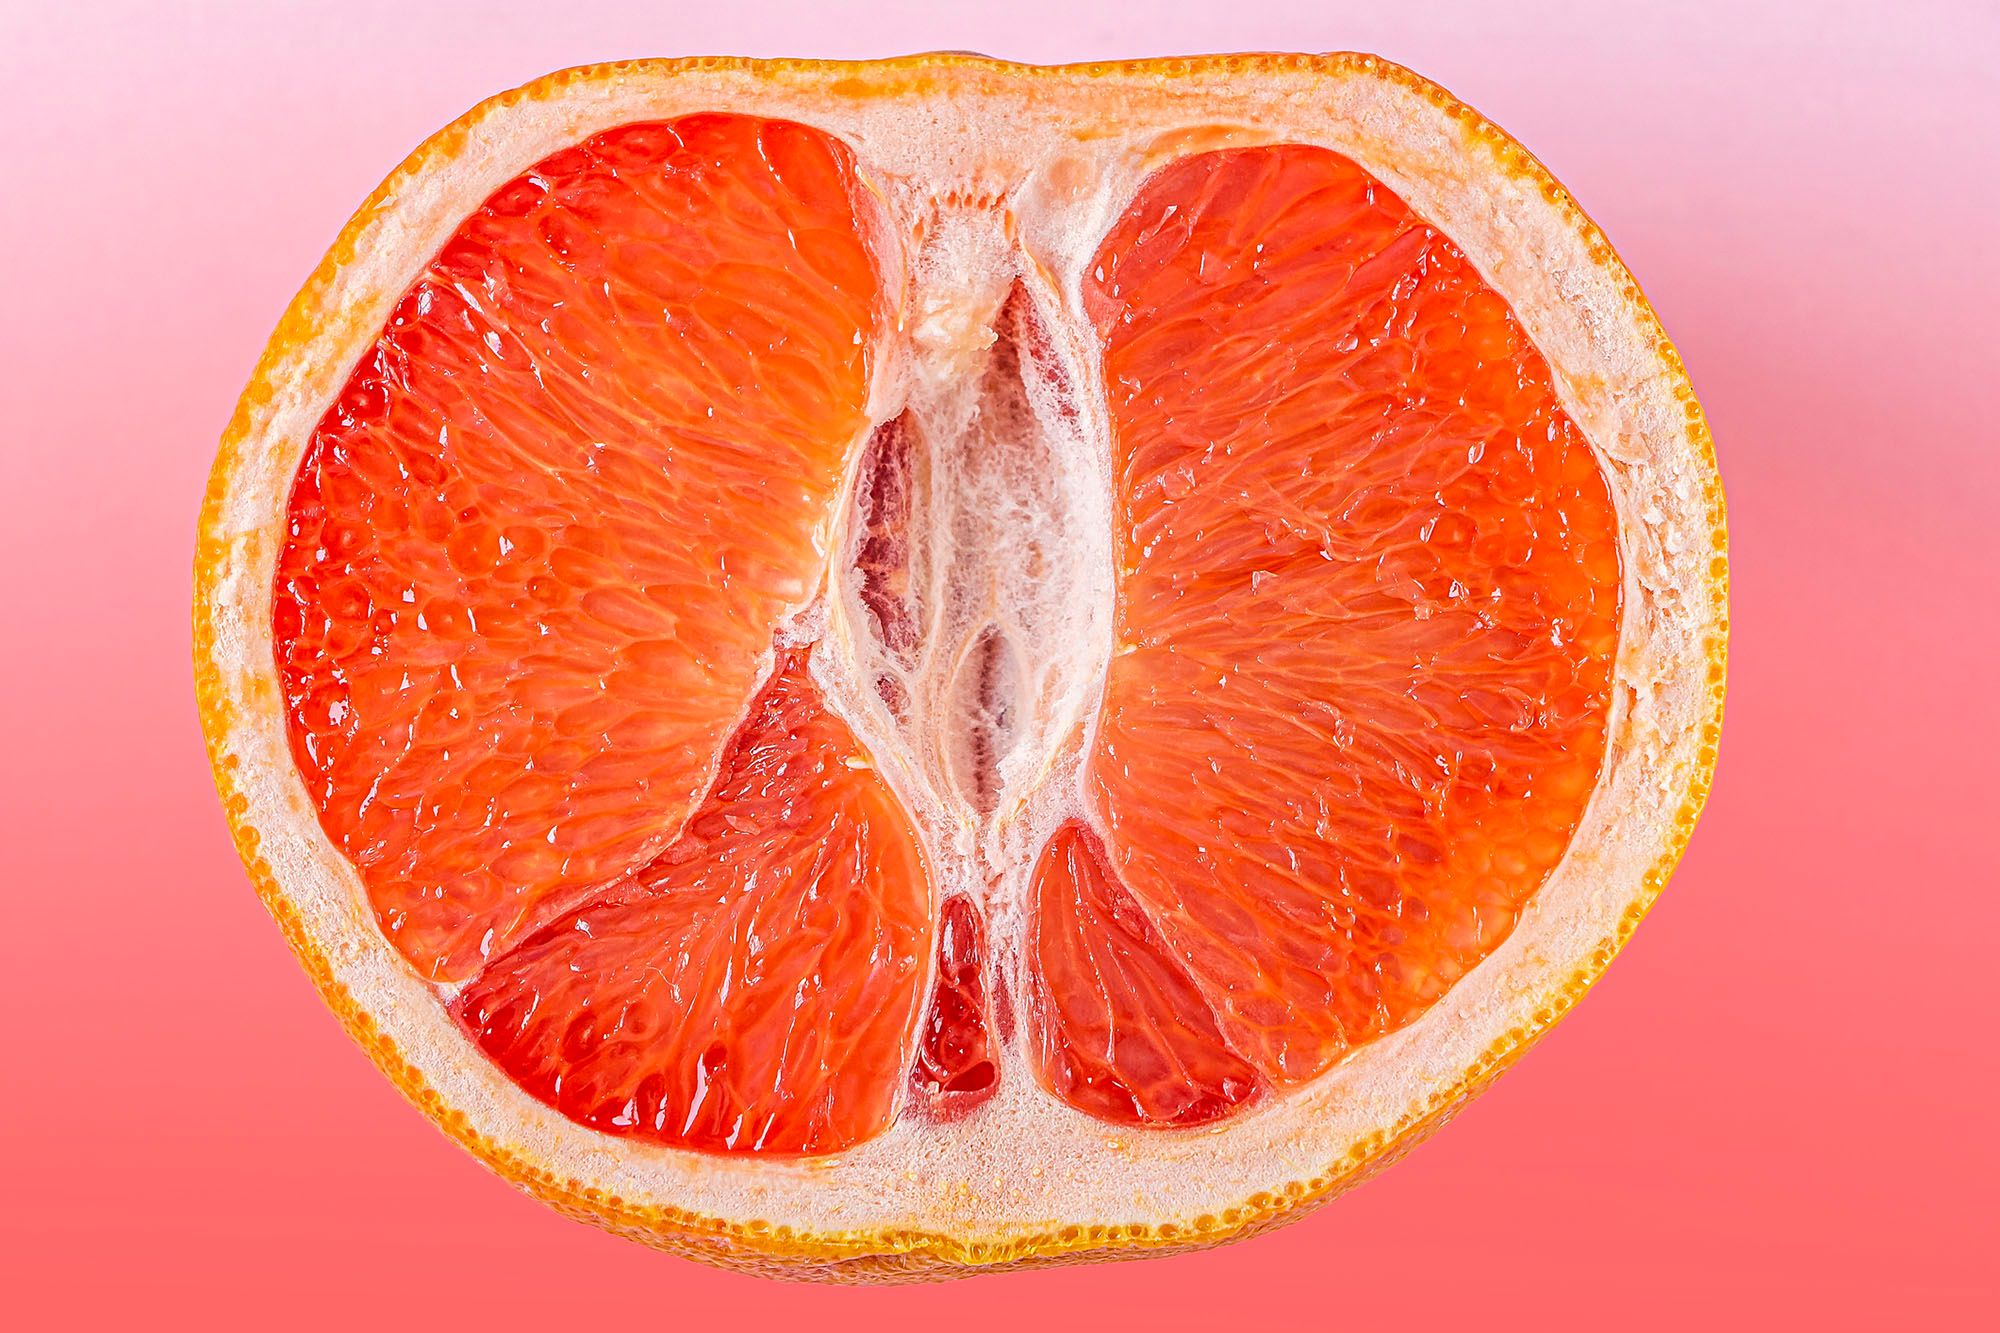 Halbierte Orange vor orangenem Hintergund